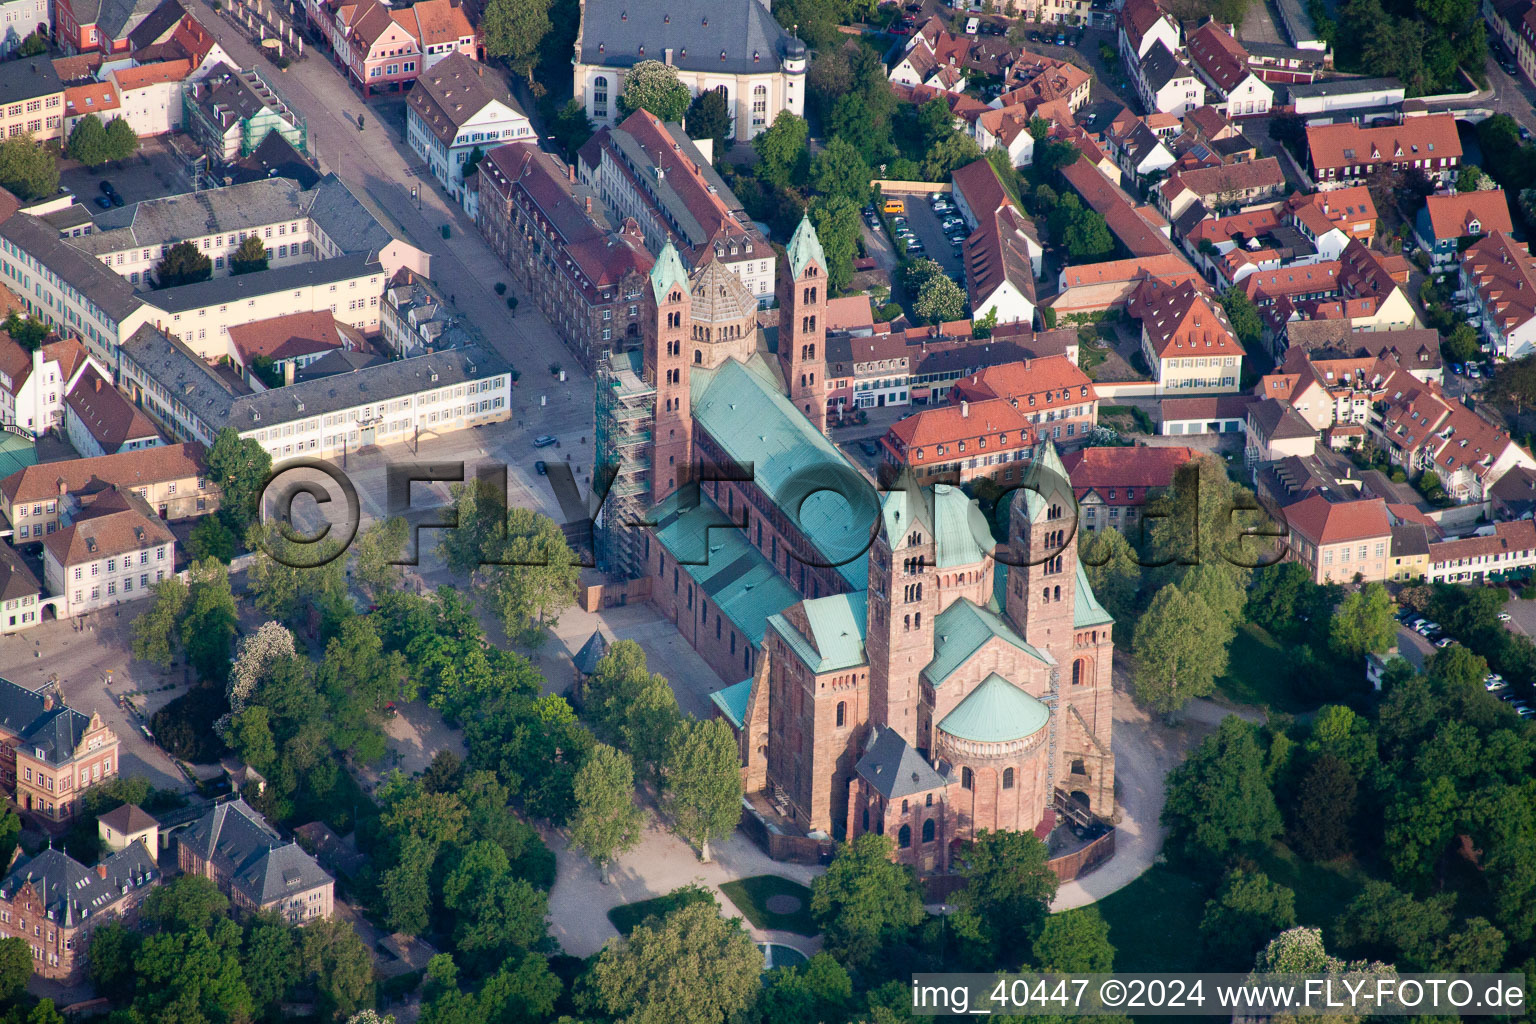 Photographie aérienne de Bâtiment de l'église de la cathédrale dans la vieille ville à Speyer dans le département Rhénanie-Palatinat, Allemagne